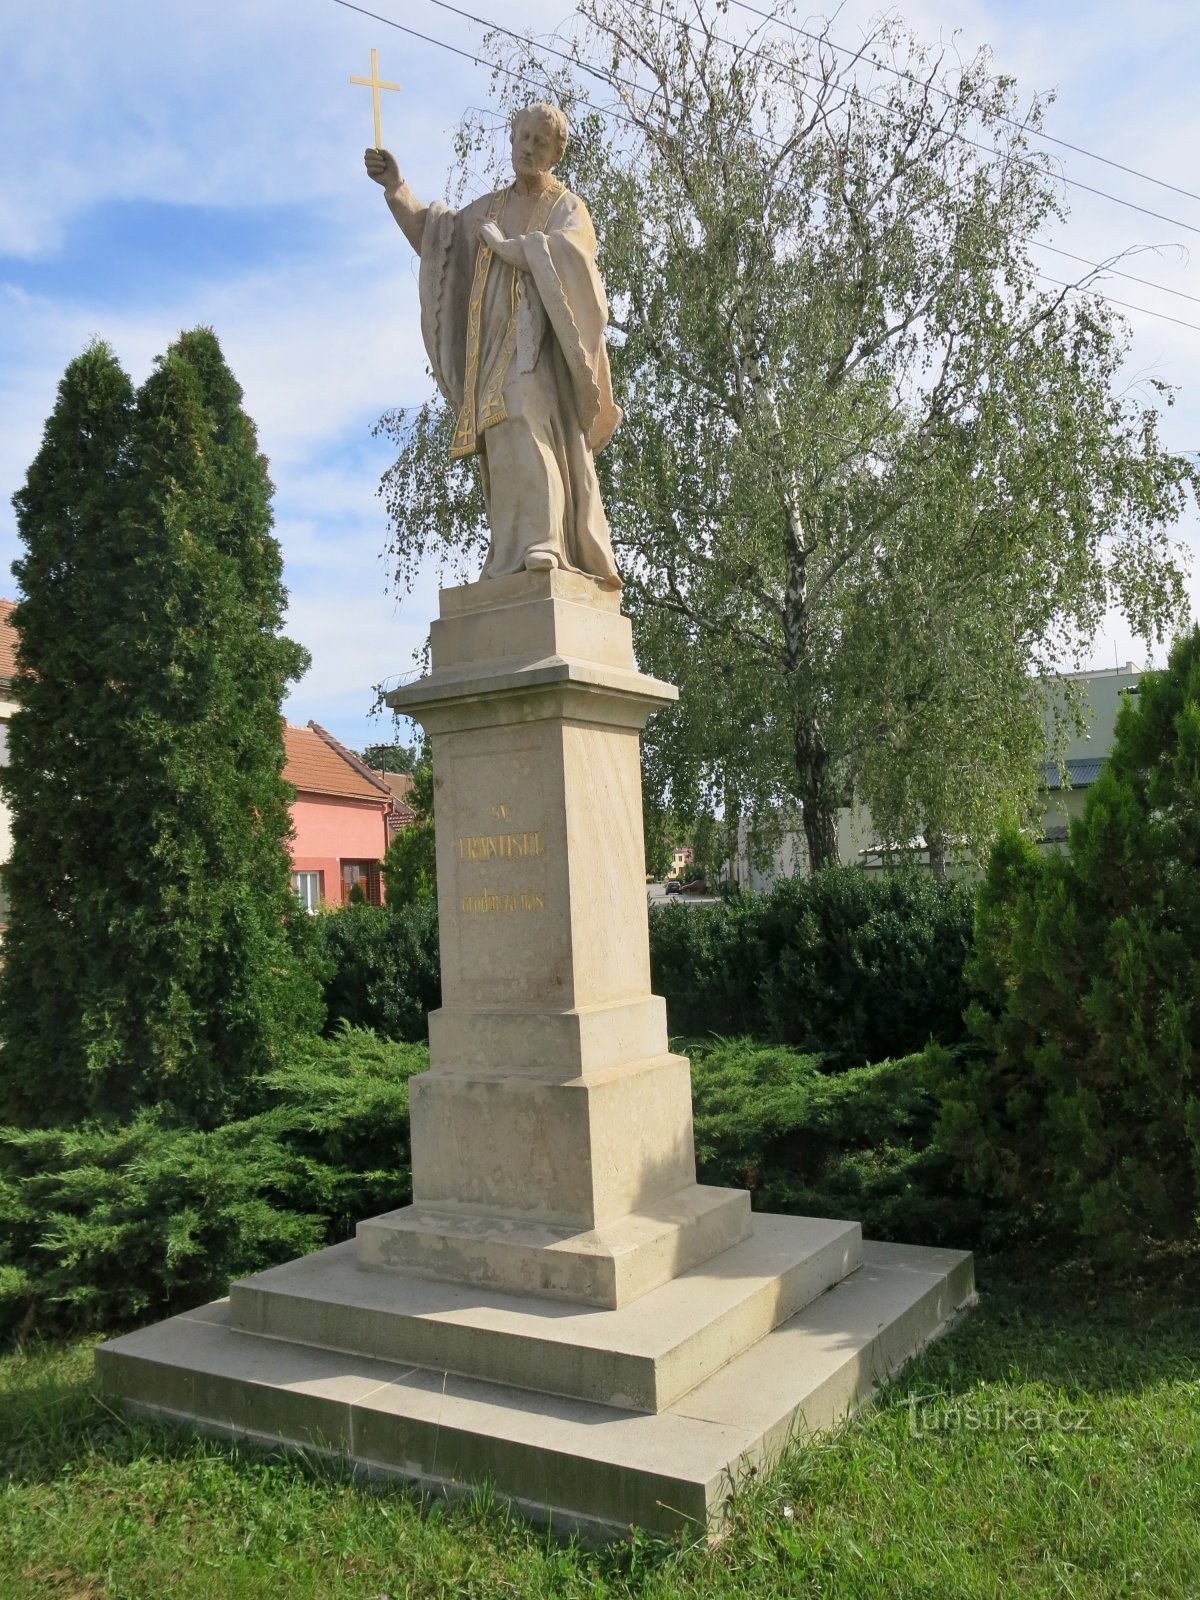 Blatnice under St. Anthony - statue of St. František Xaversky